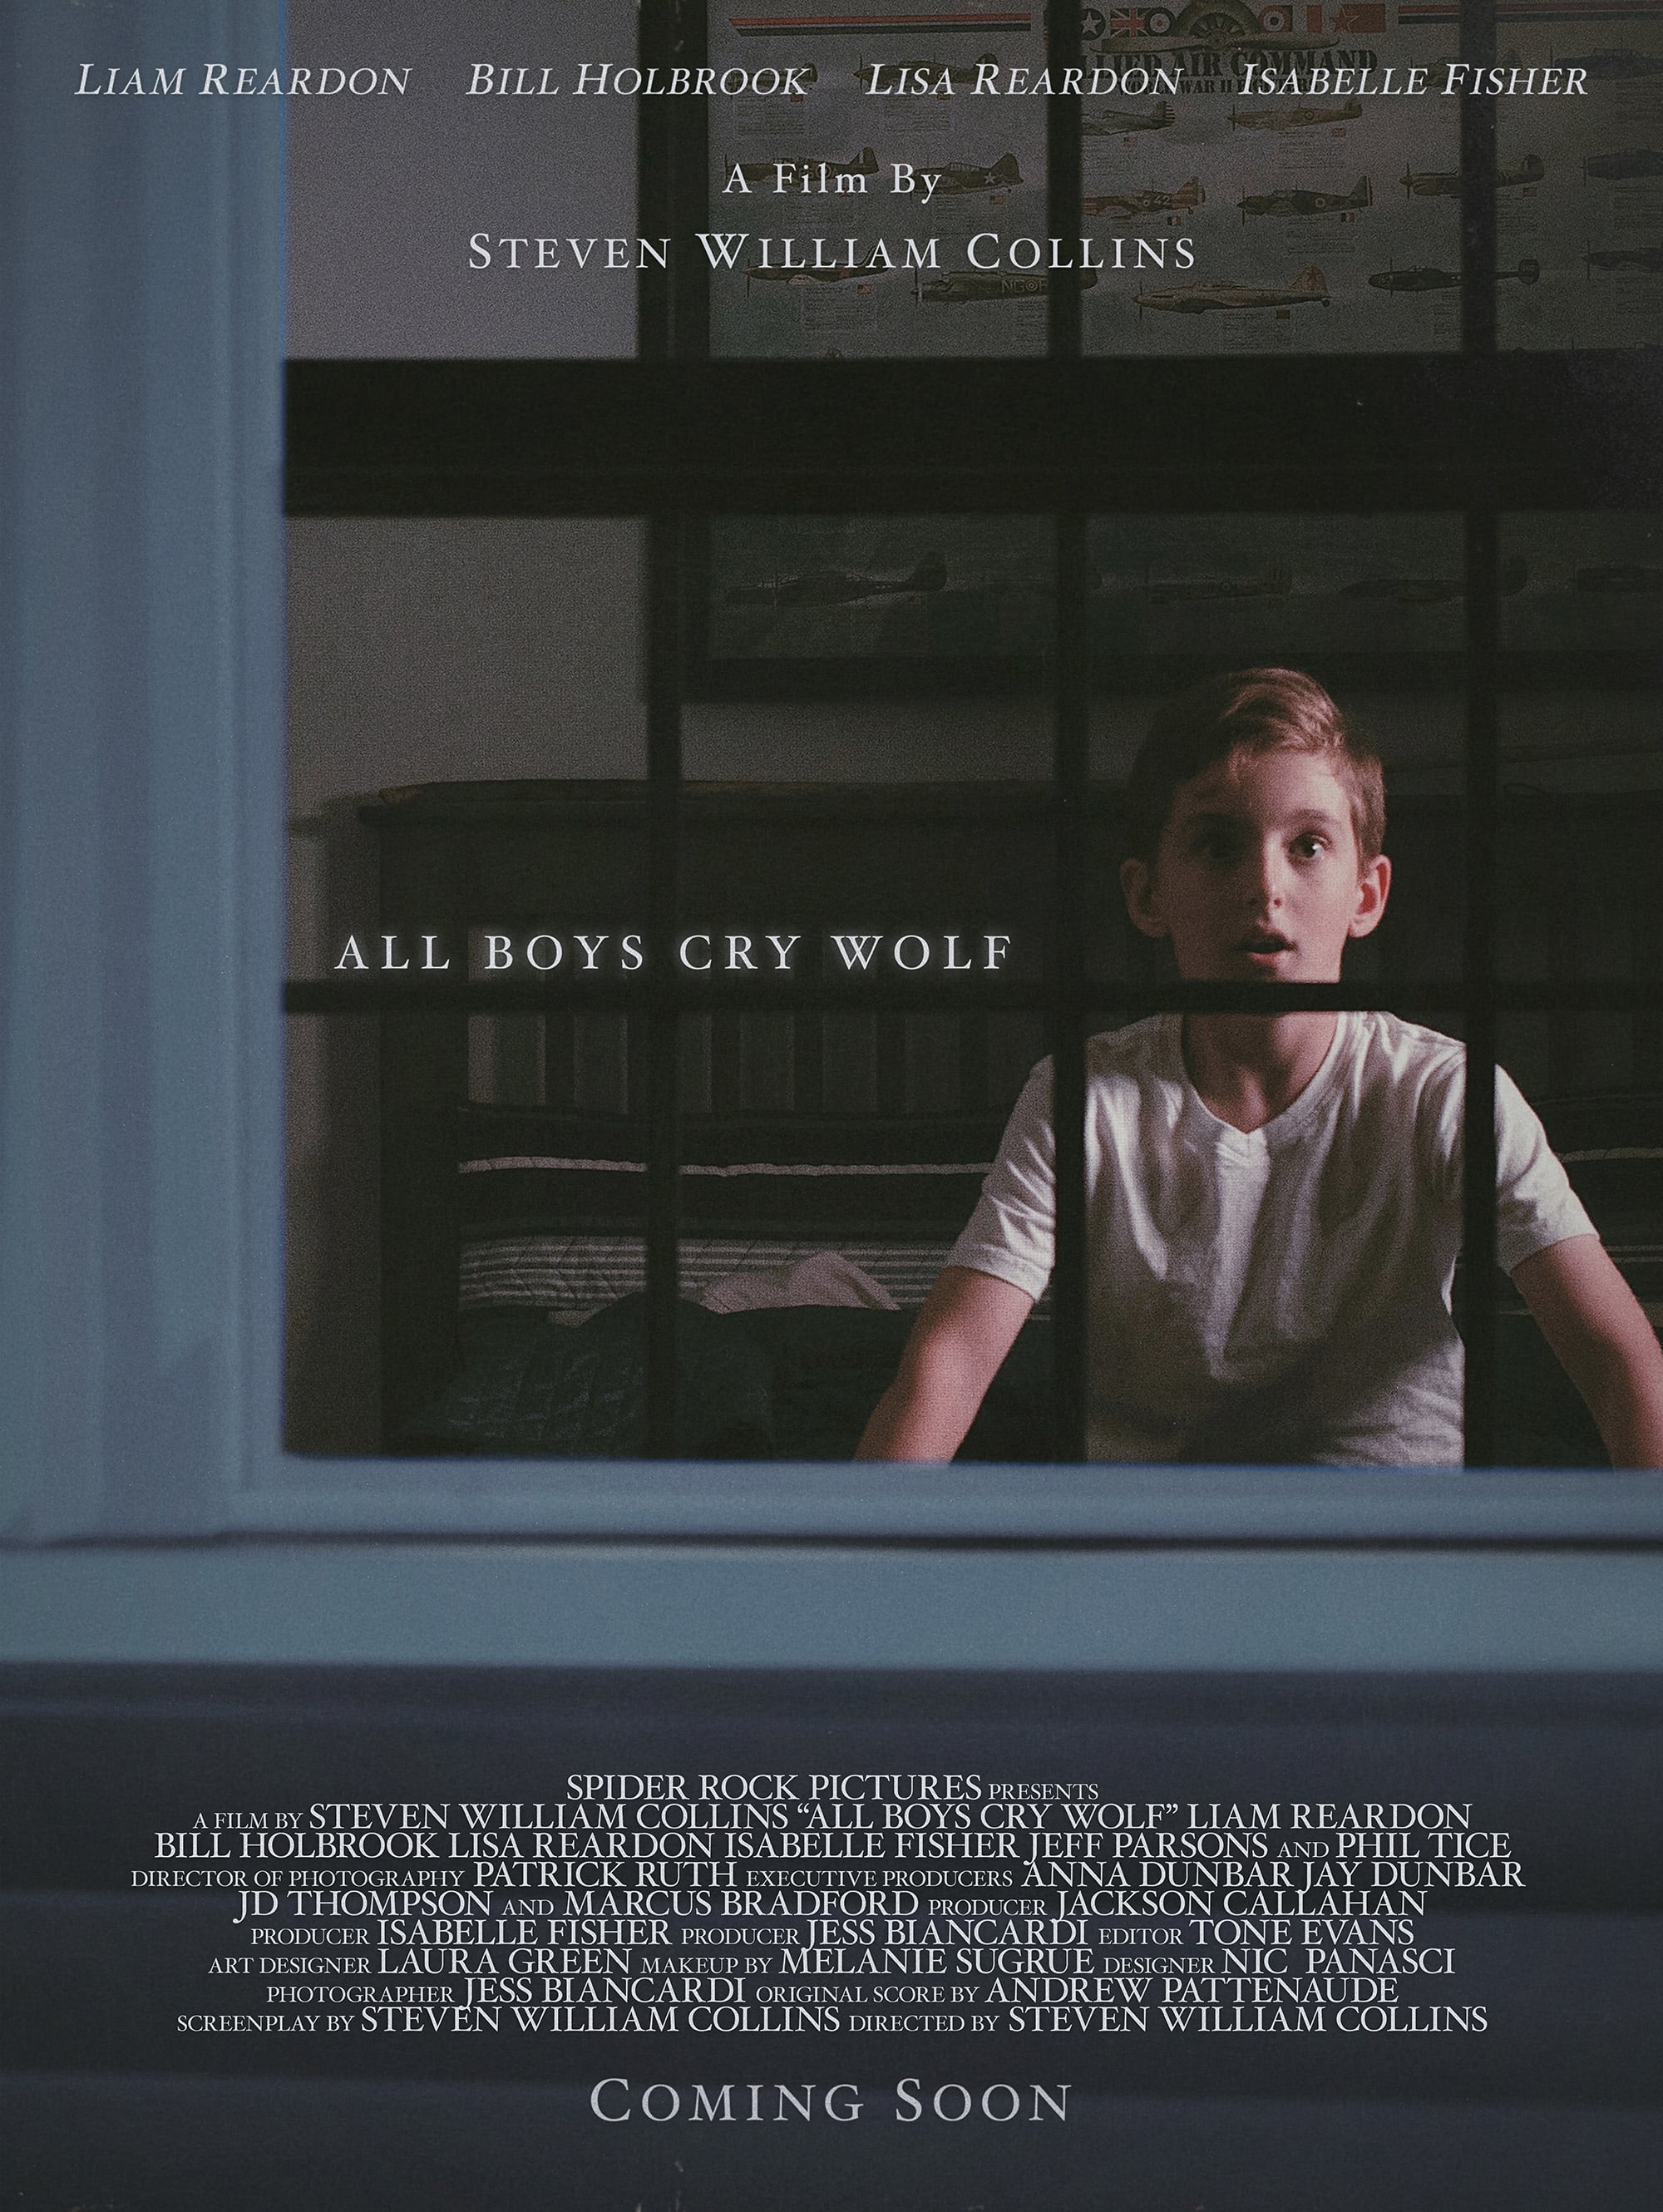 All Boys Cry Wolf